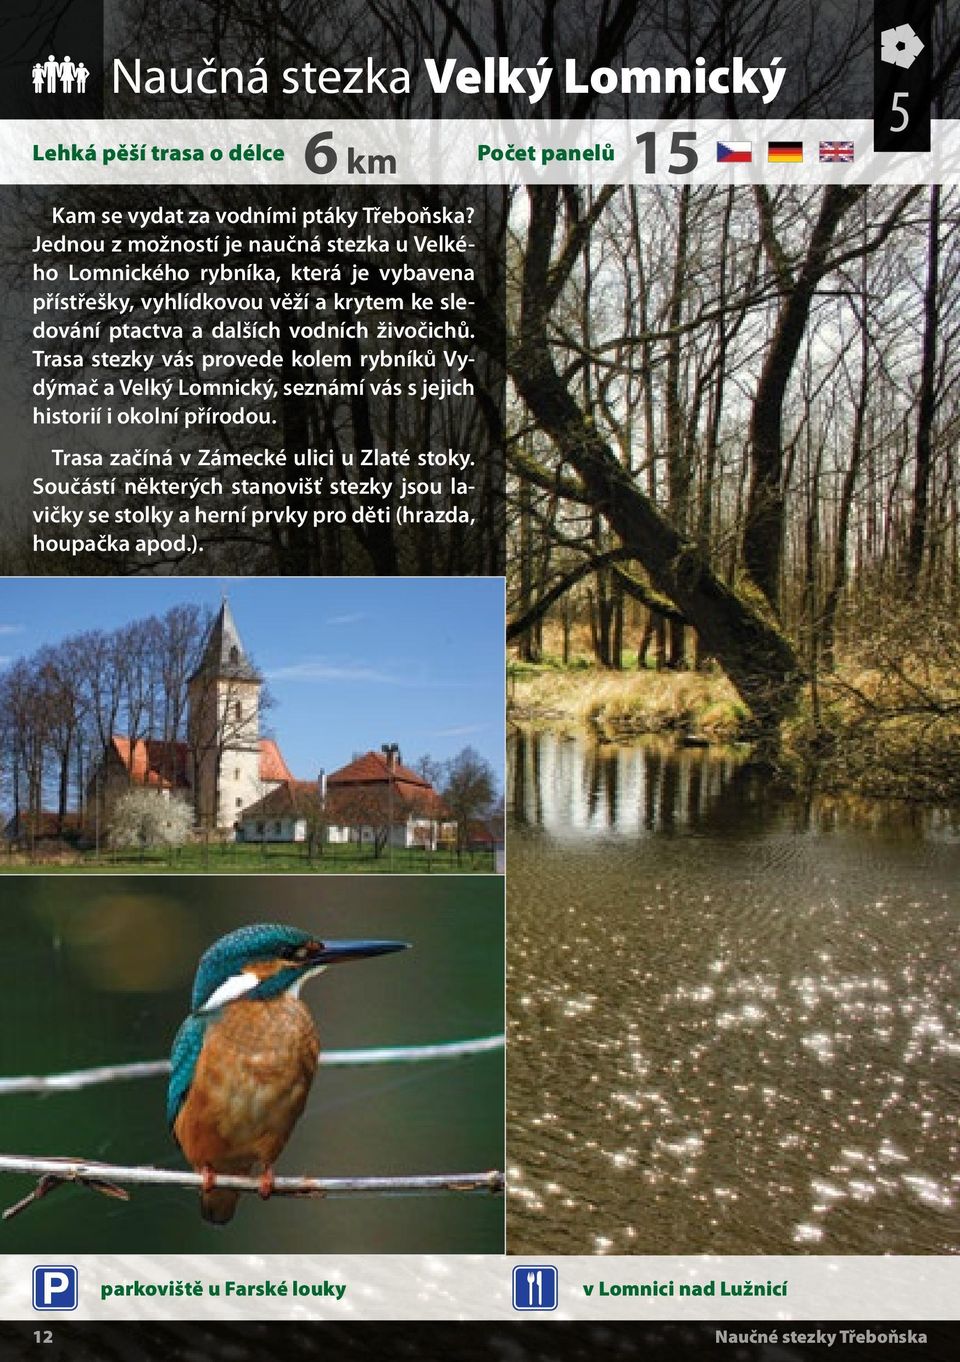 vodních živočichů. Trasa stezky vás provede kolem rybníků Vydýmač a Velký Lomnický, seznámí vás s jejich historií i okolní přírodou.